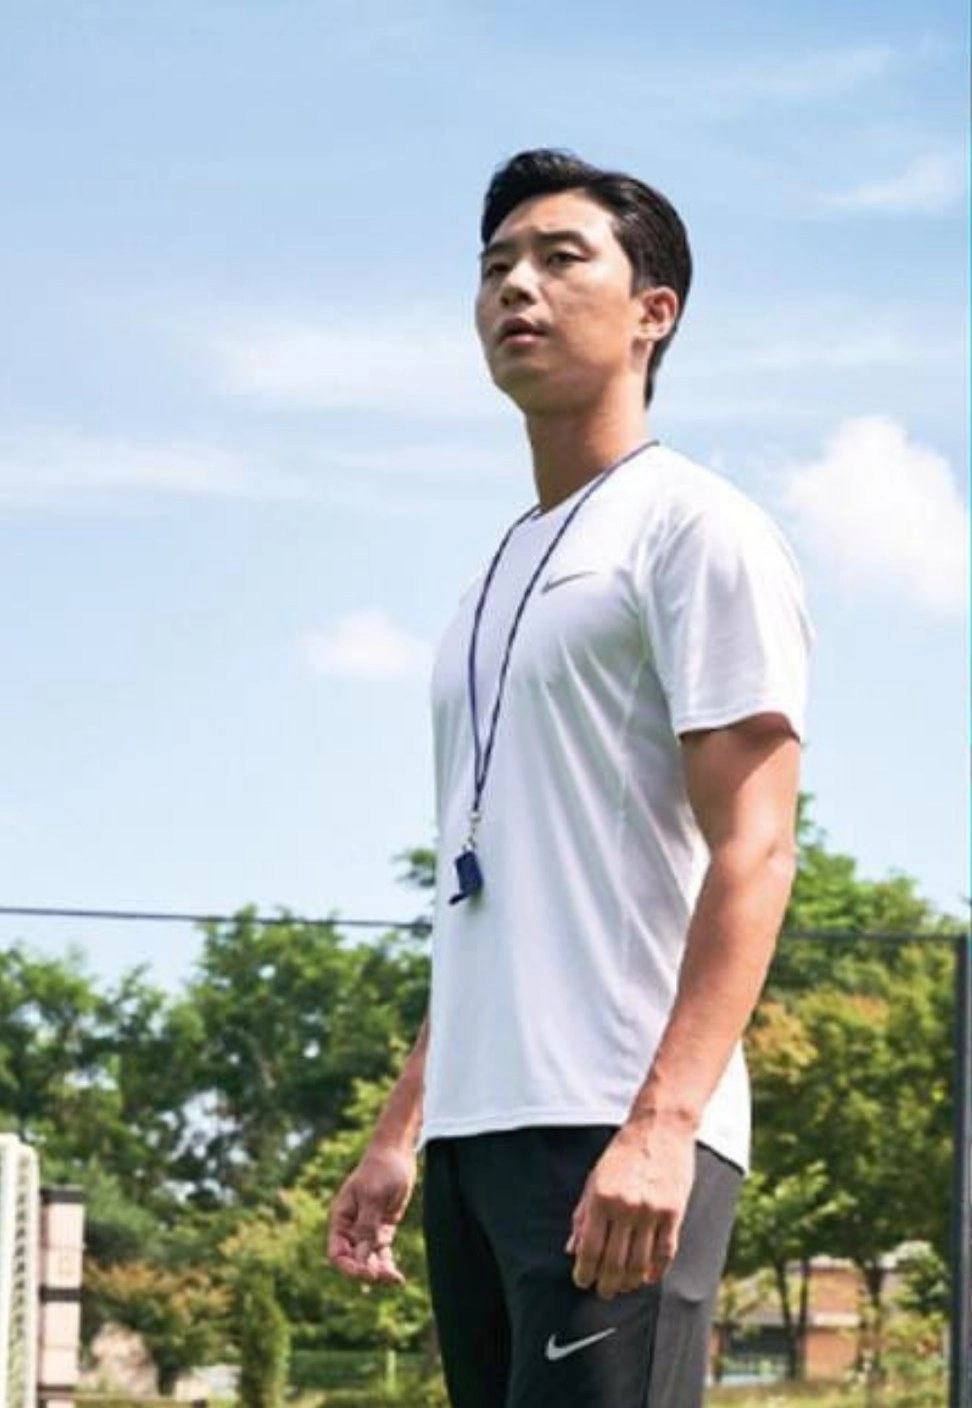 Diễn viên Park Seo Joon vào vai một cầu thủ bóng đá chuyên nghiệp trong tác phẩm điện ảnh Dream